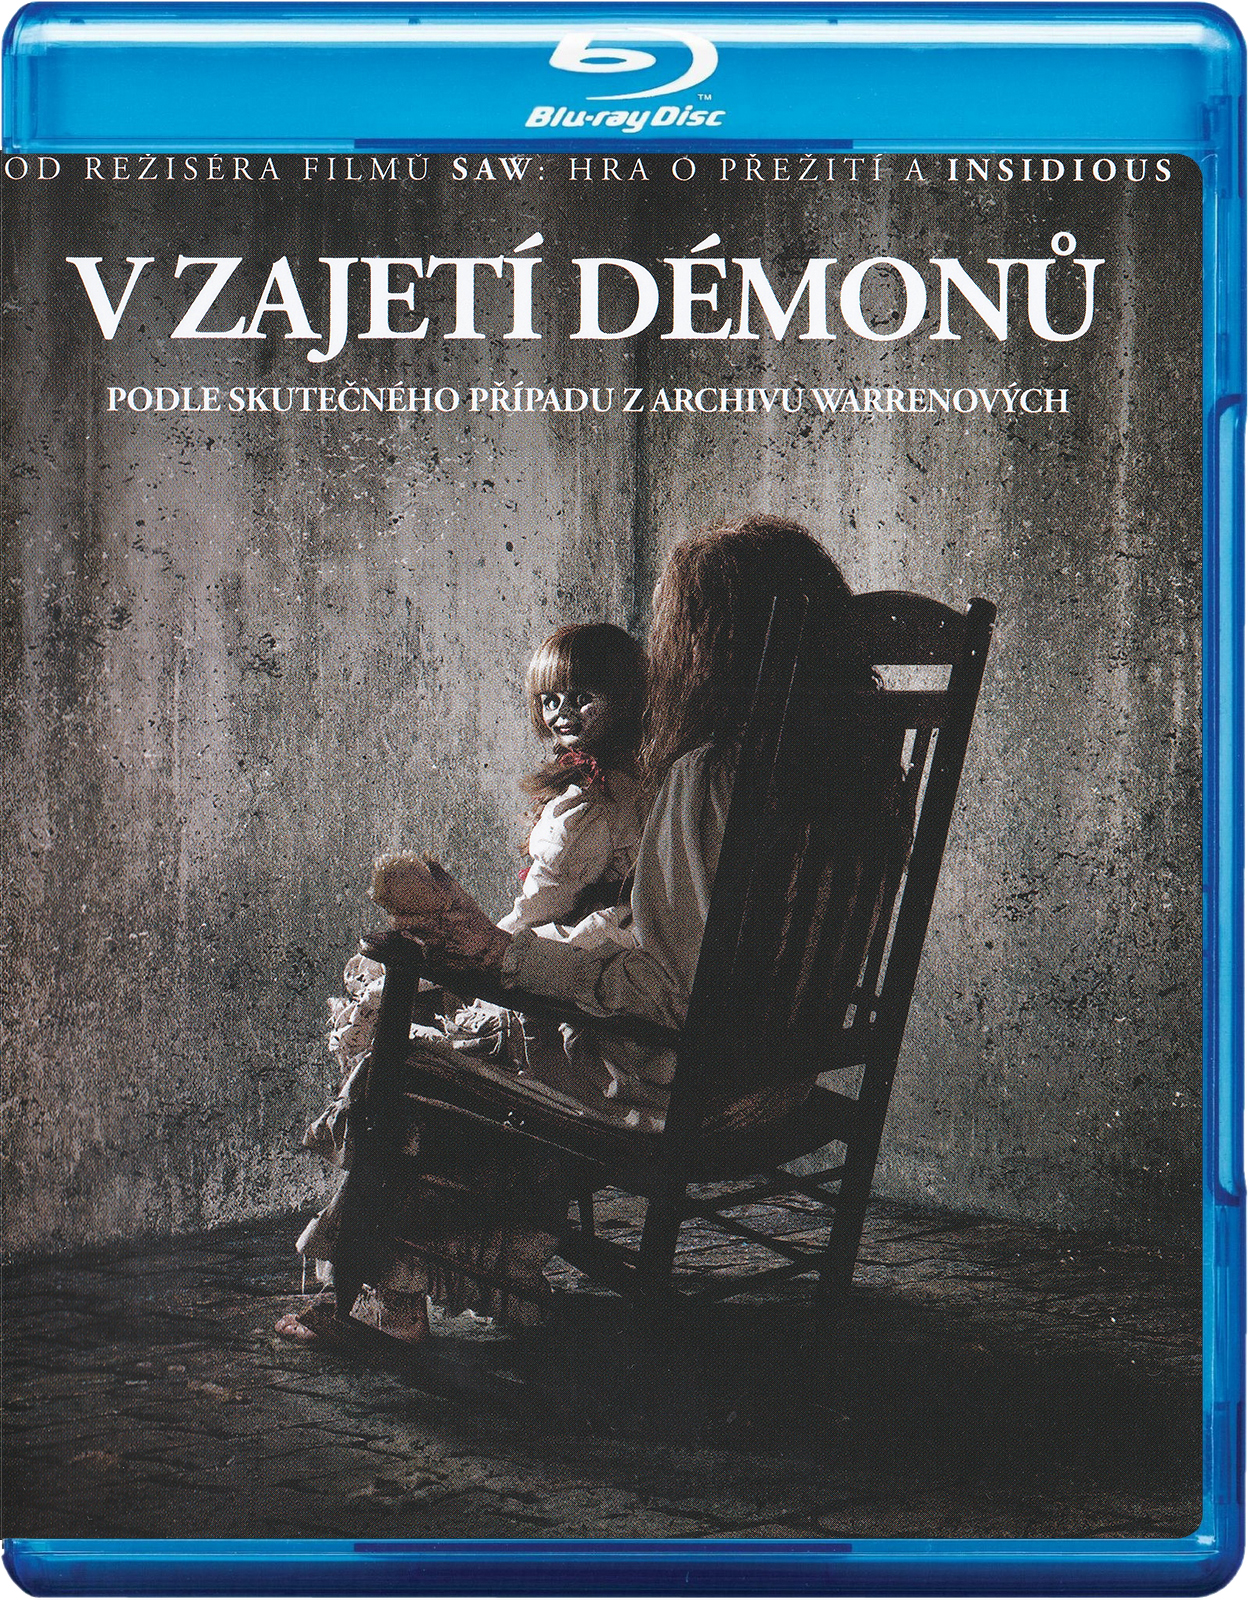 Stiahni si HD Filmy V zajeti demonu/The Conjuring (2013)(CZ/EN)[720pHD] = CSFD 82%